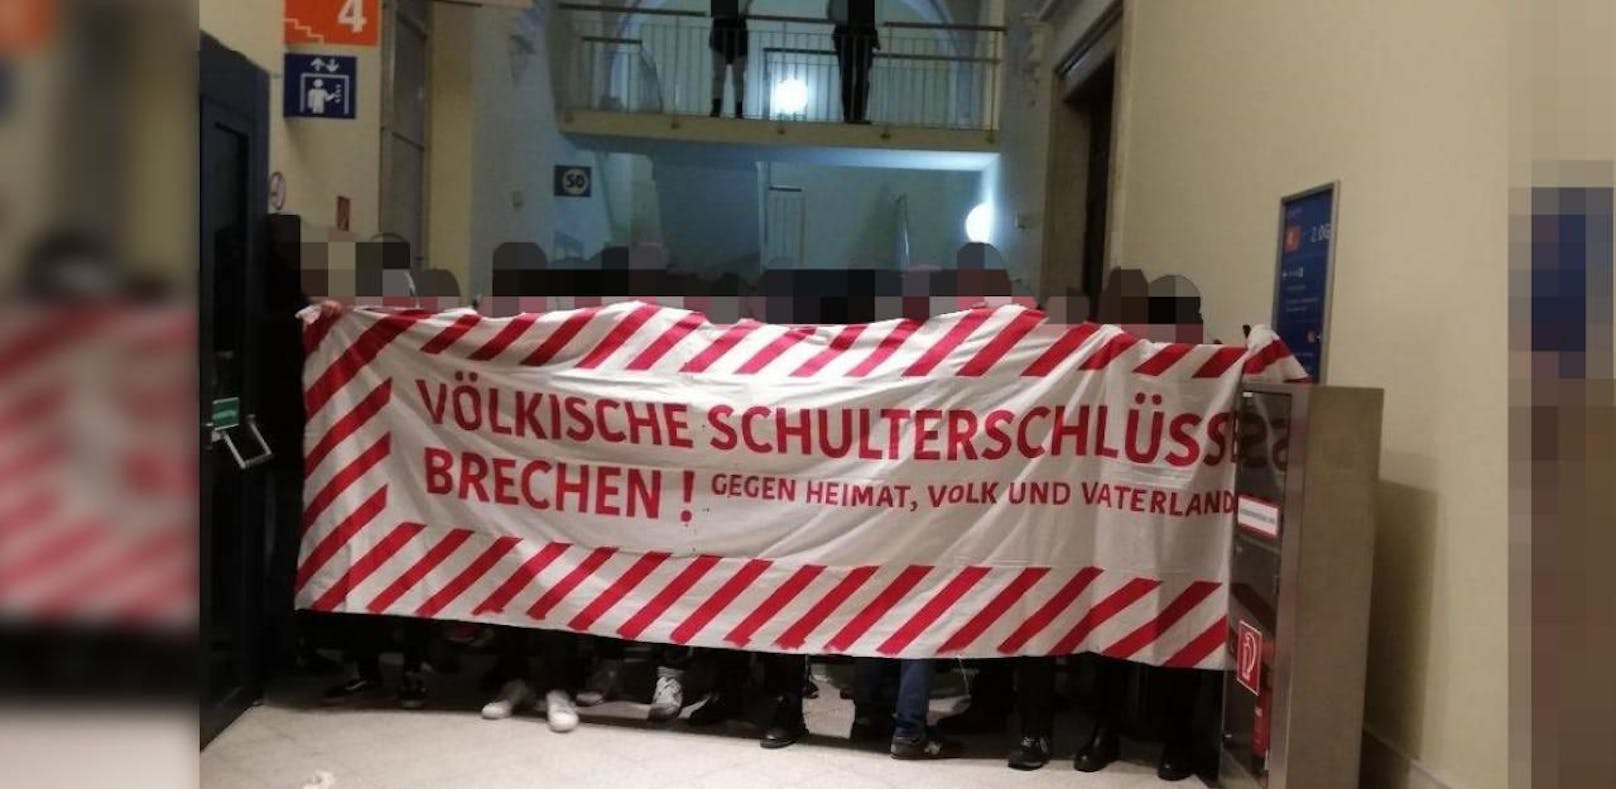 Linke Demonstranten besetzten am Dienstag die Wiener Haupt-Uni - jetzt macht die FPÖ diesen Vorfall zur Parlamentssache